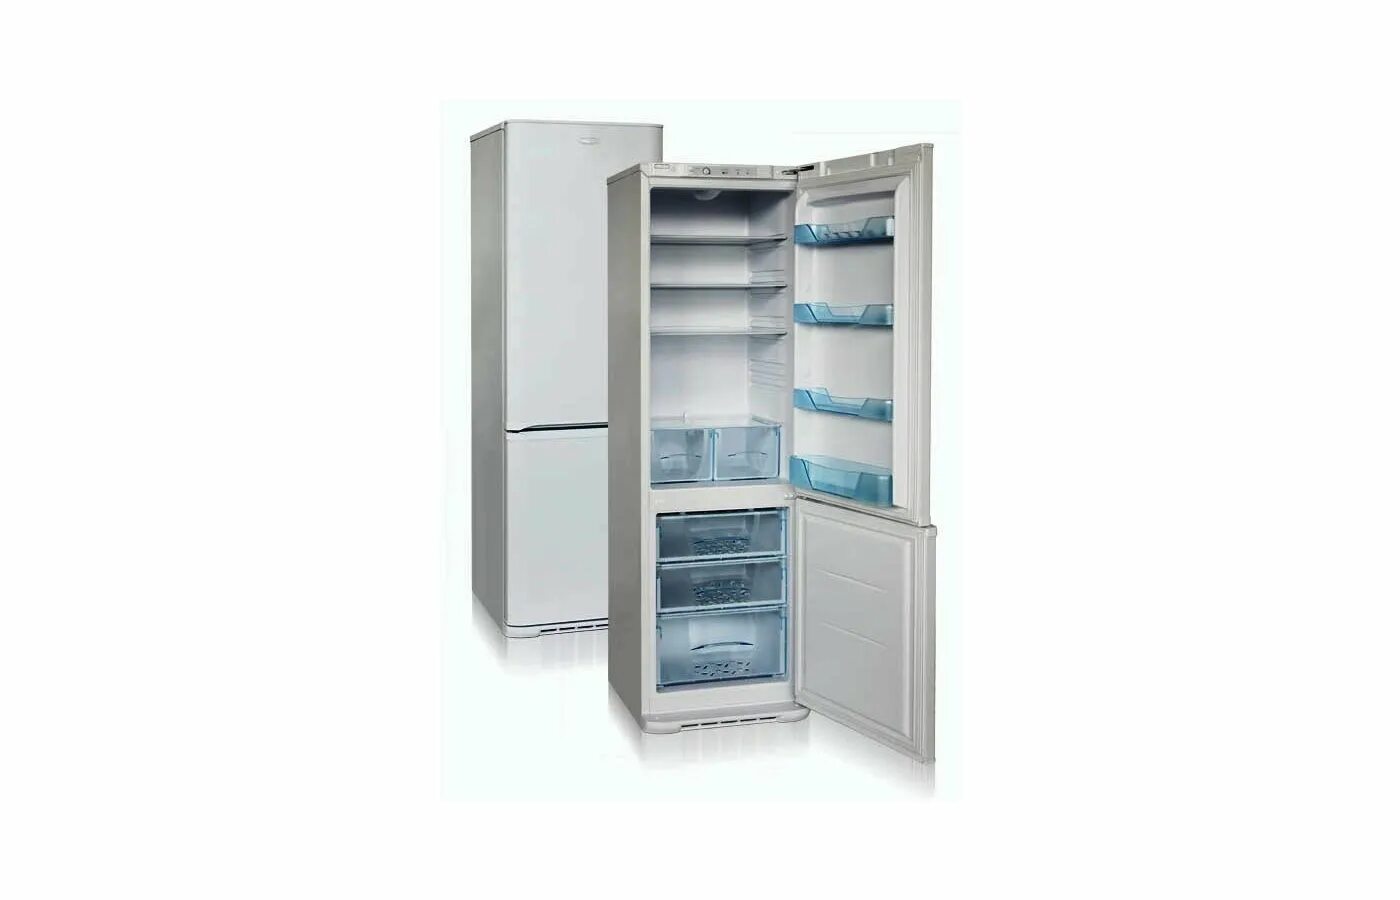 Двухкамерный холодильник Бирюса 132. Бирюса м127 холодильник. Холодильник Бирюса двухкамерный модели 132. Холодильник Бирюса 6032. Бирюса новосибирске купить